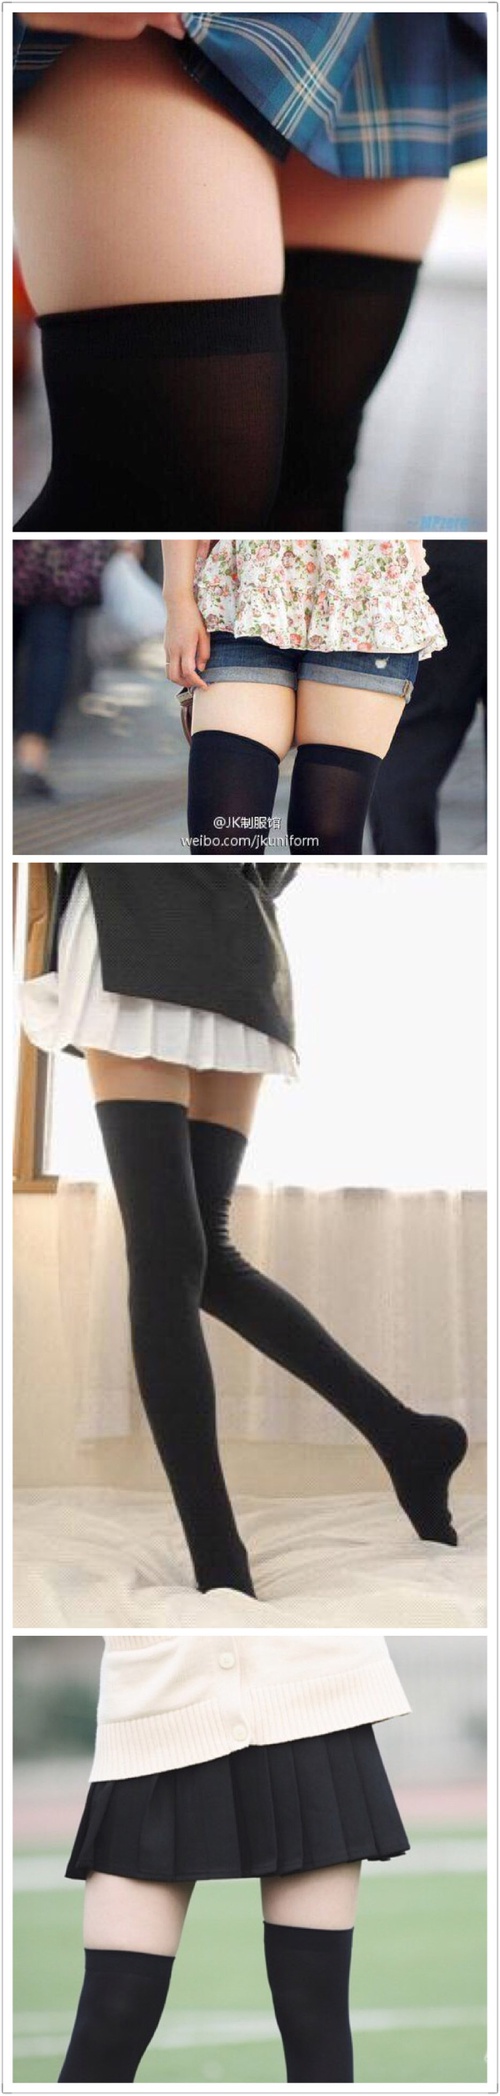 大家觉得图中哪种腿穿高筒袜比较好看？_来自小紫灵的自拍私房照分享